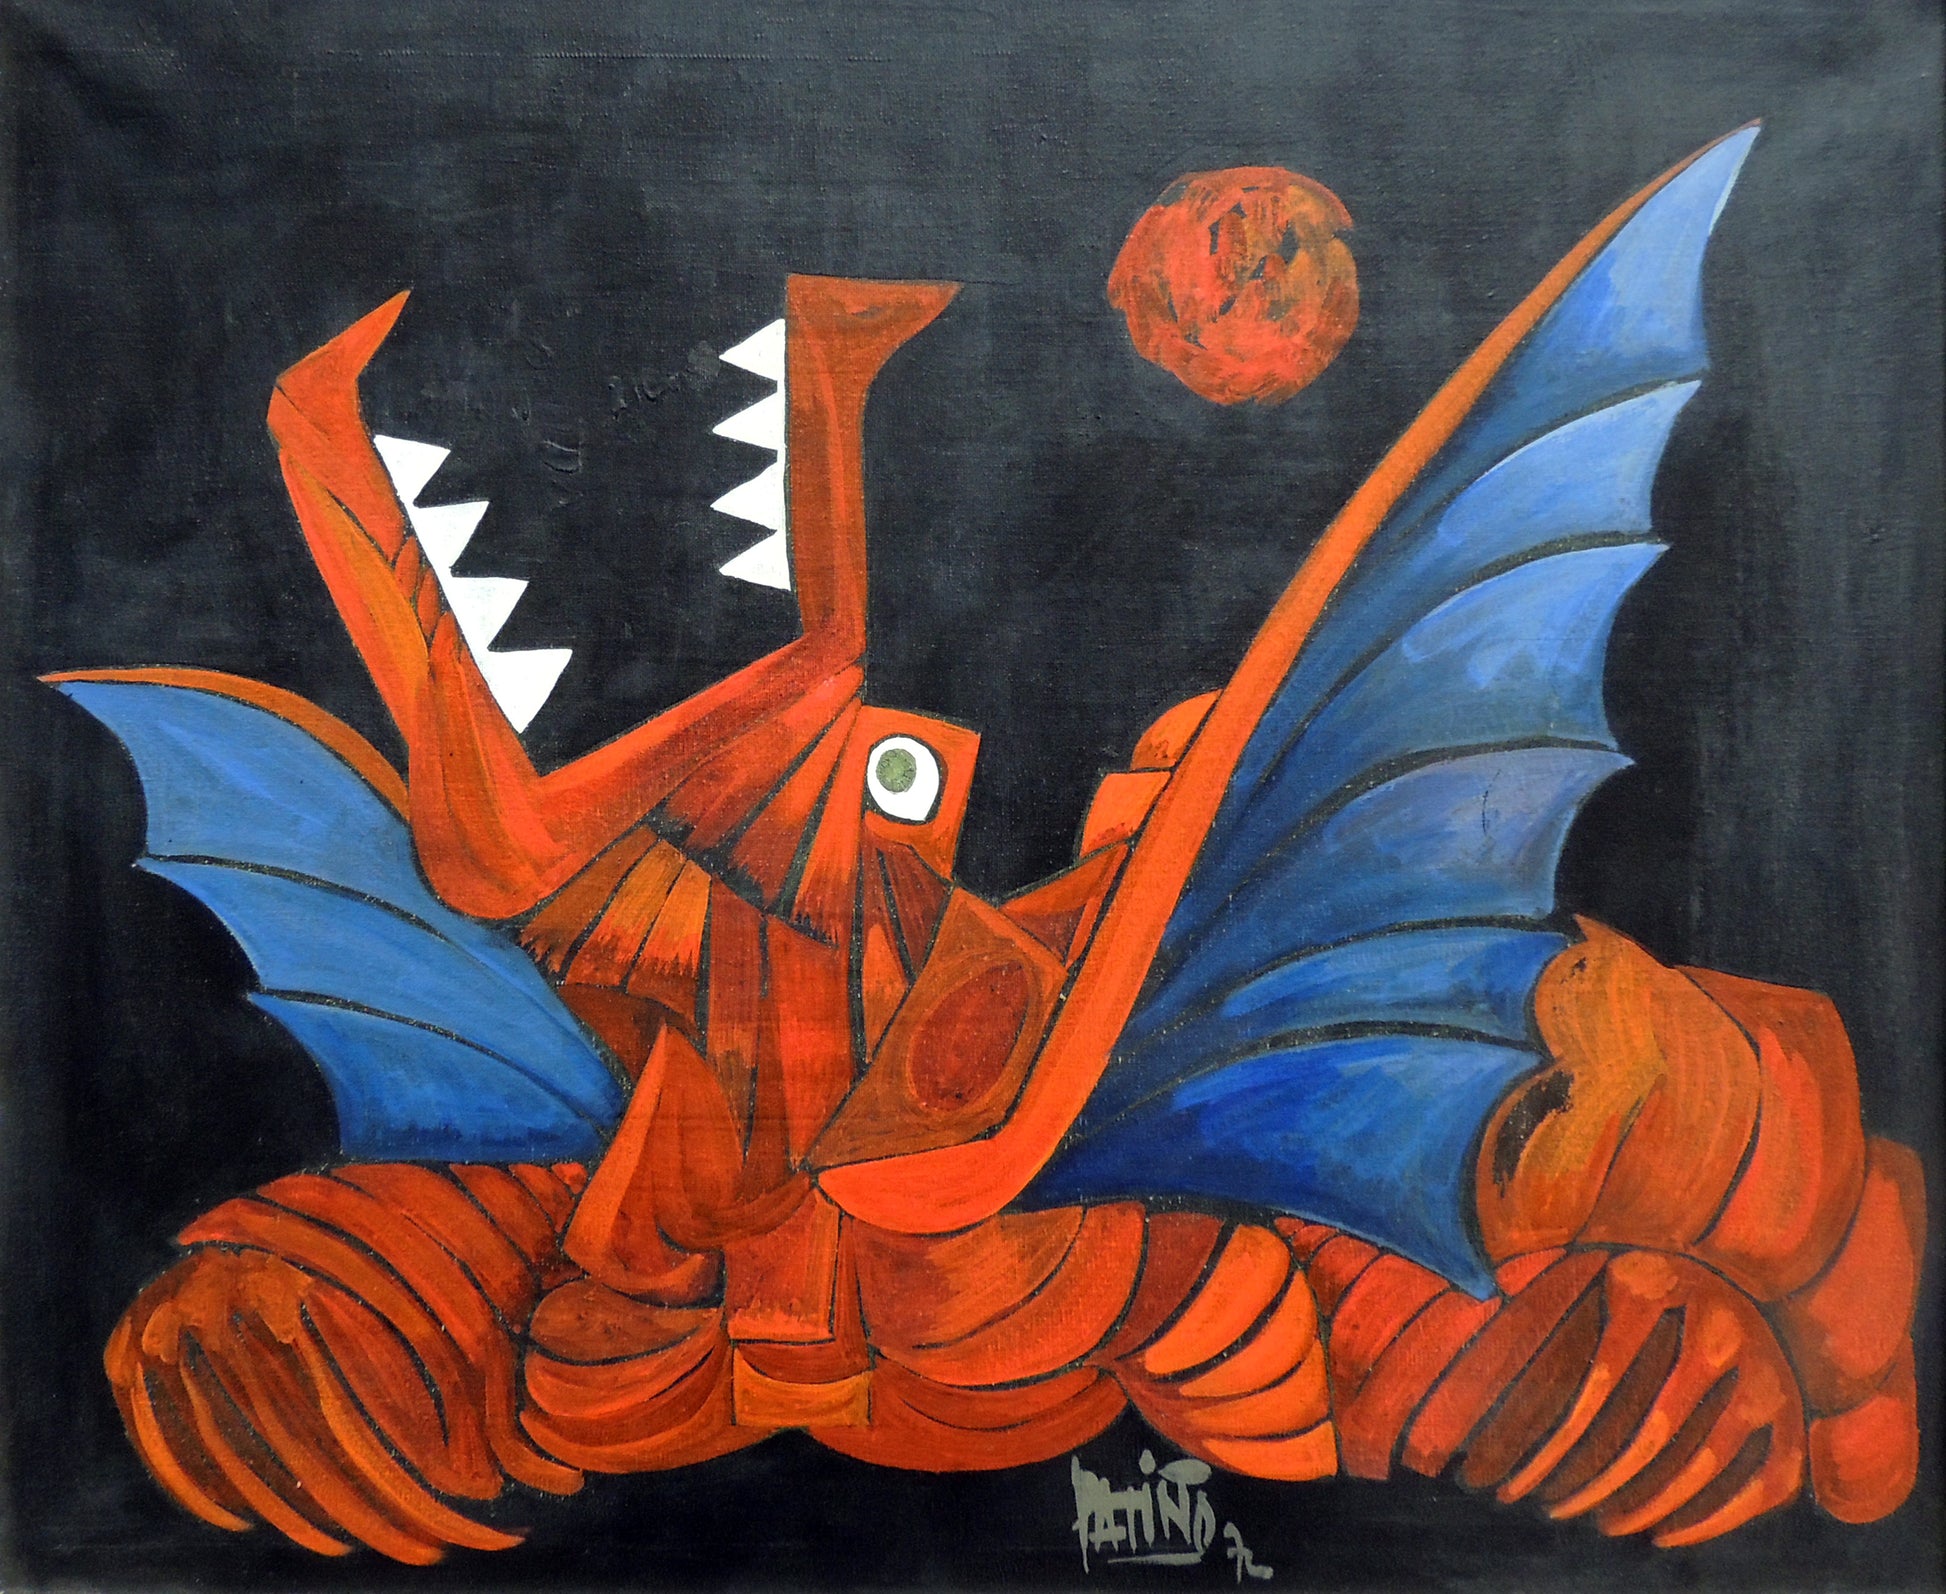 Antonio Patiño cuadro surrealista gallego dragón Gaudifond